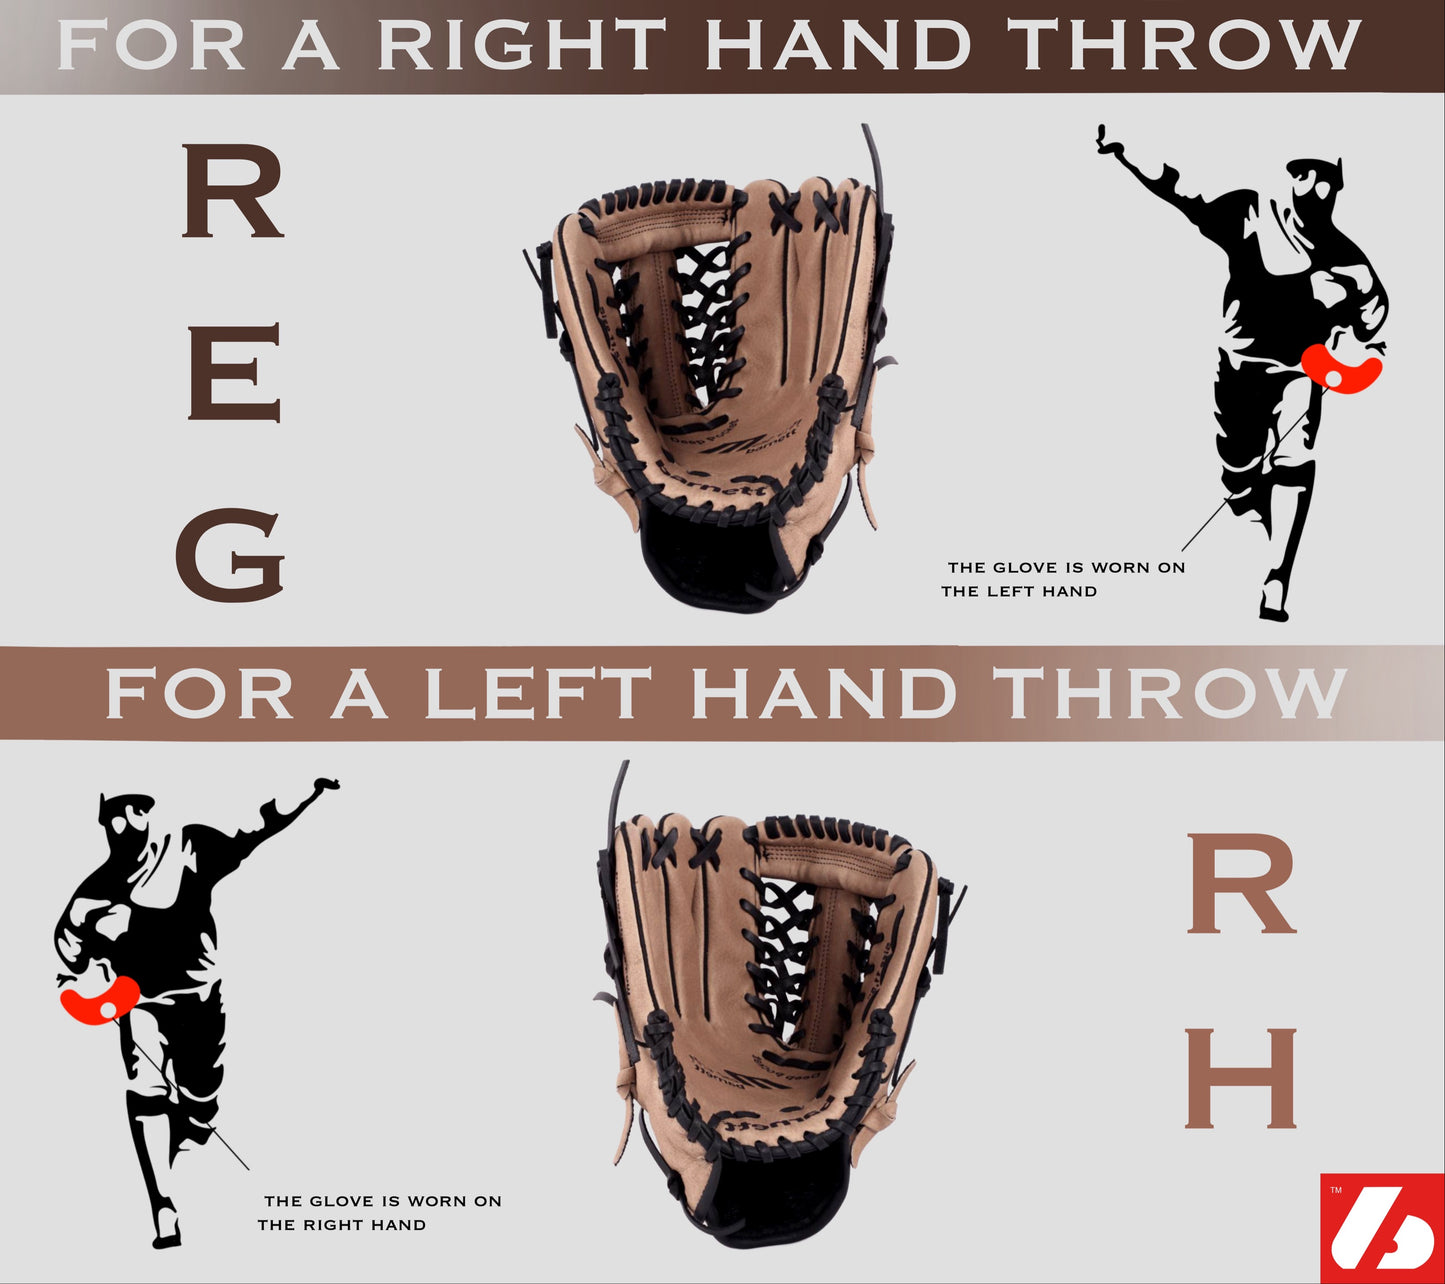 GL-110 Baseball Handschuh, Echtleder, Wettkampf, Infield Größe 11 (inch), braun